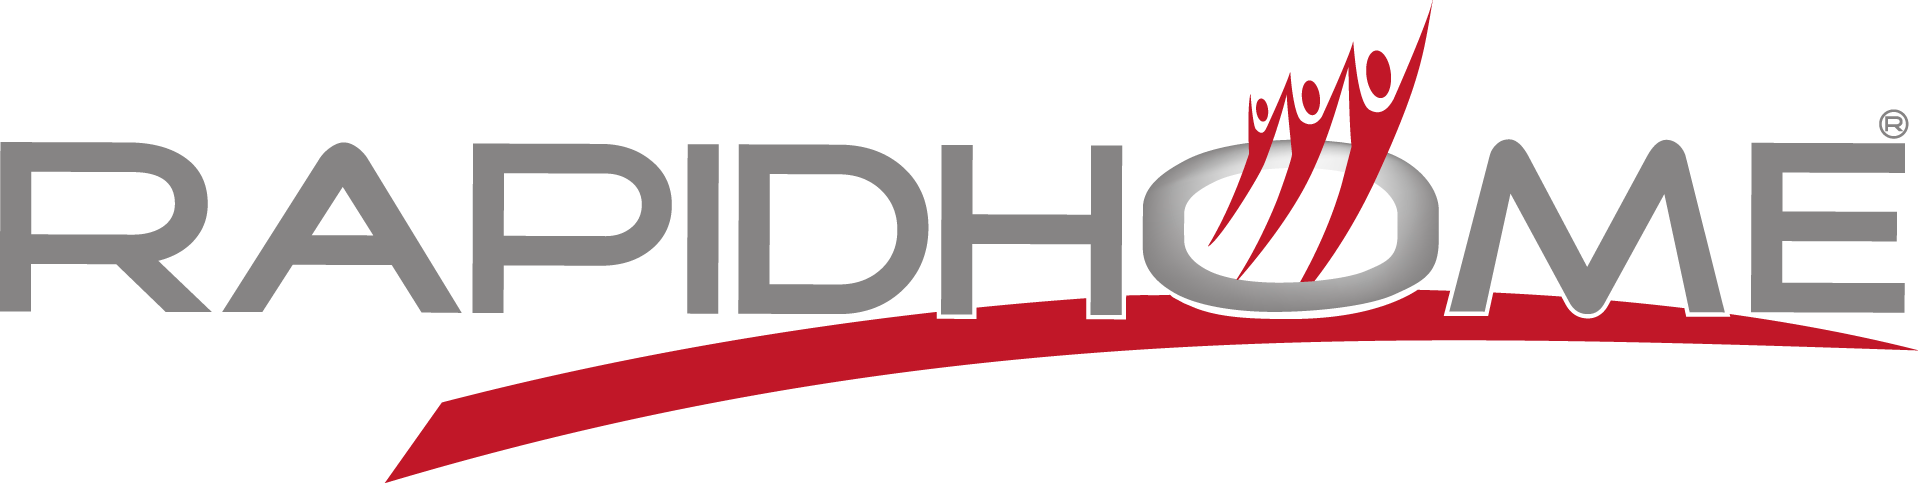 Rapidhome logotype